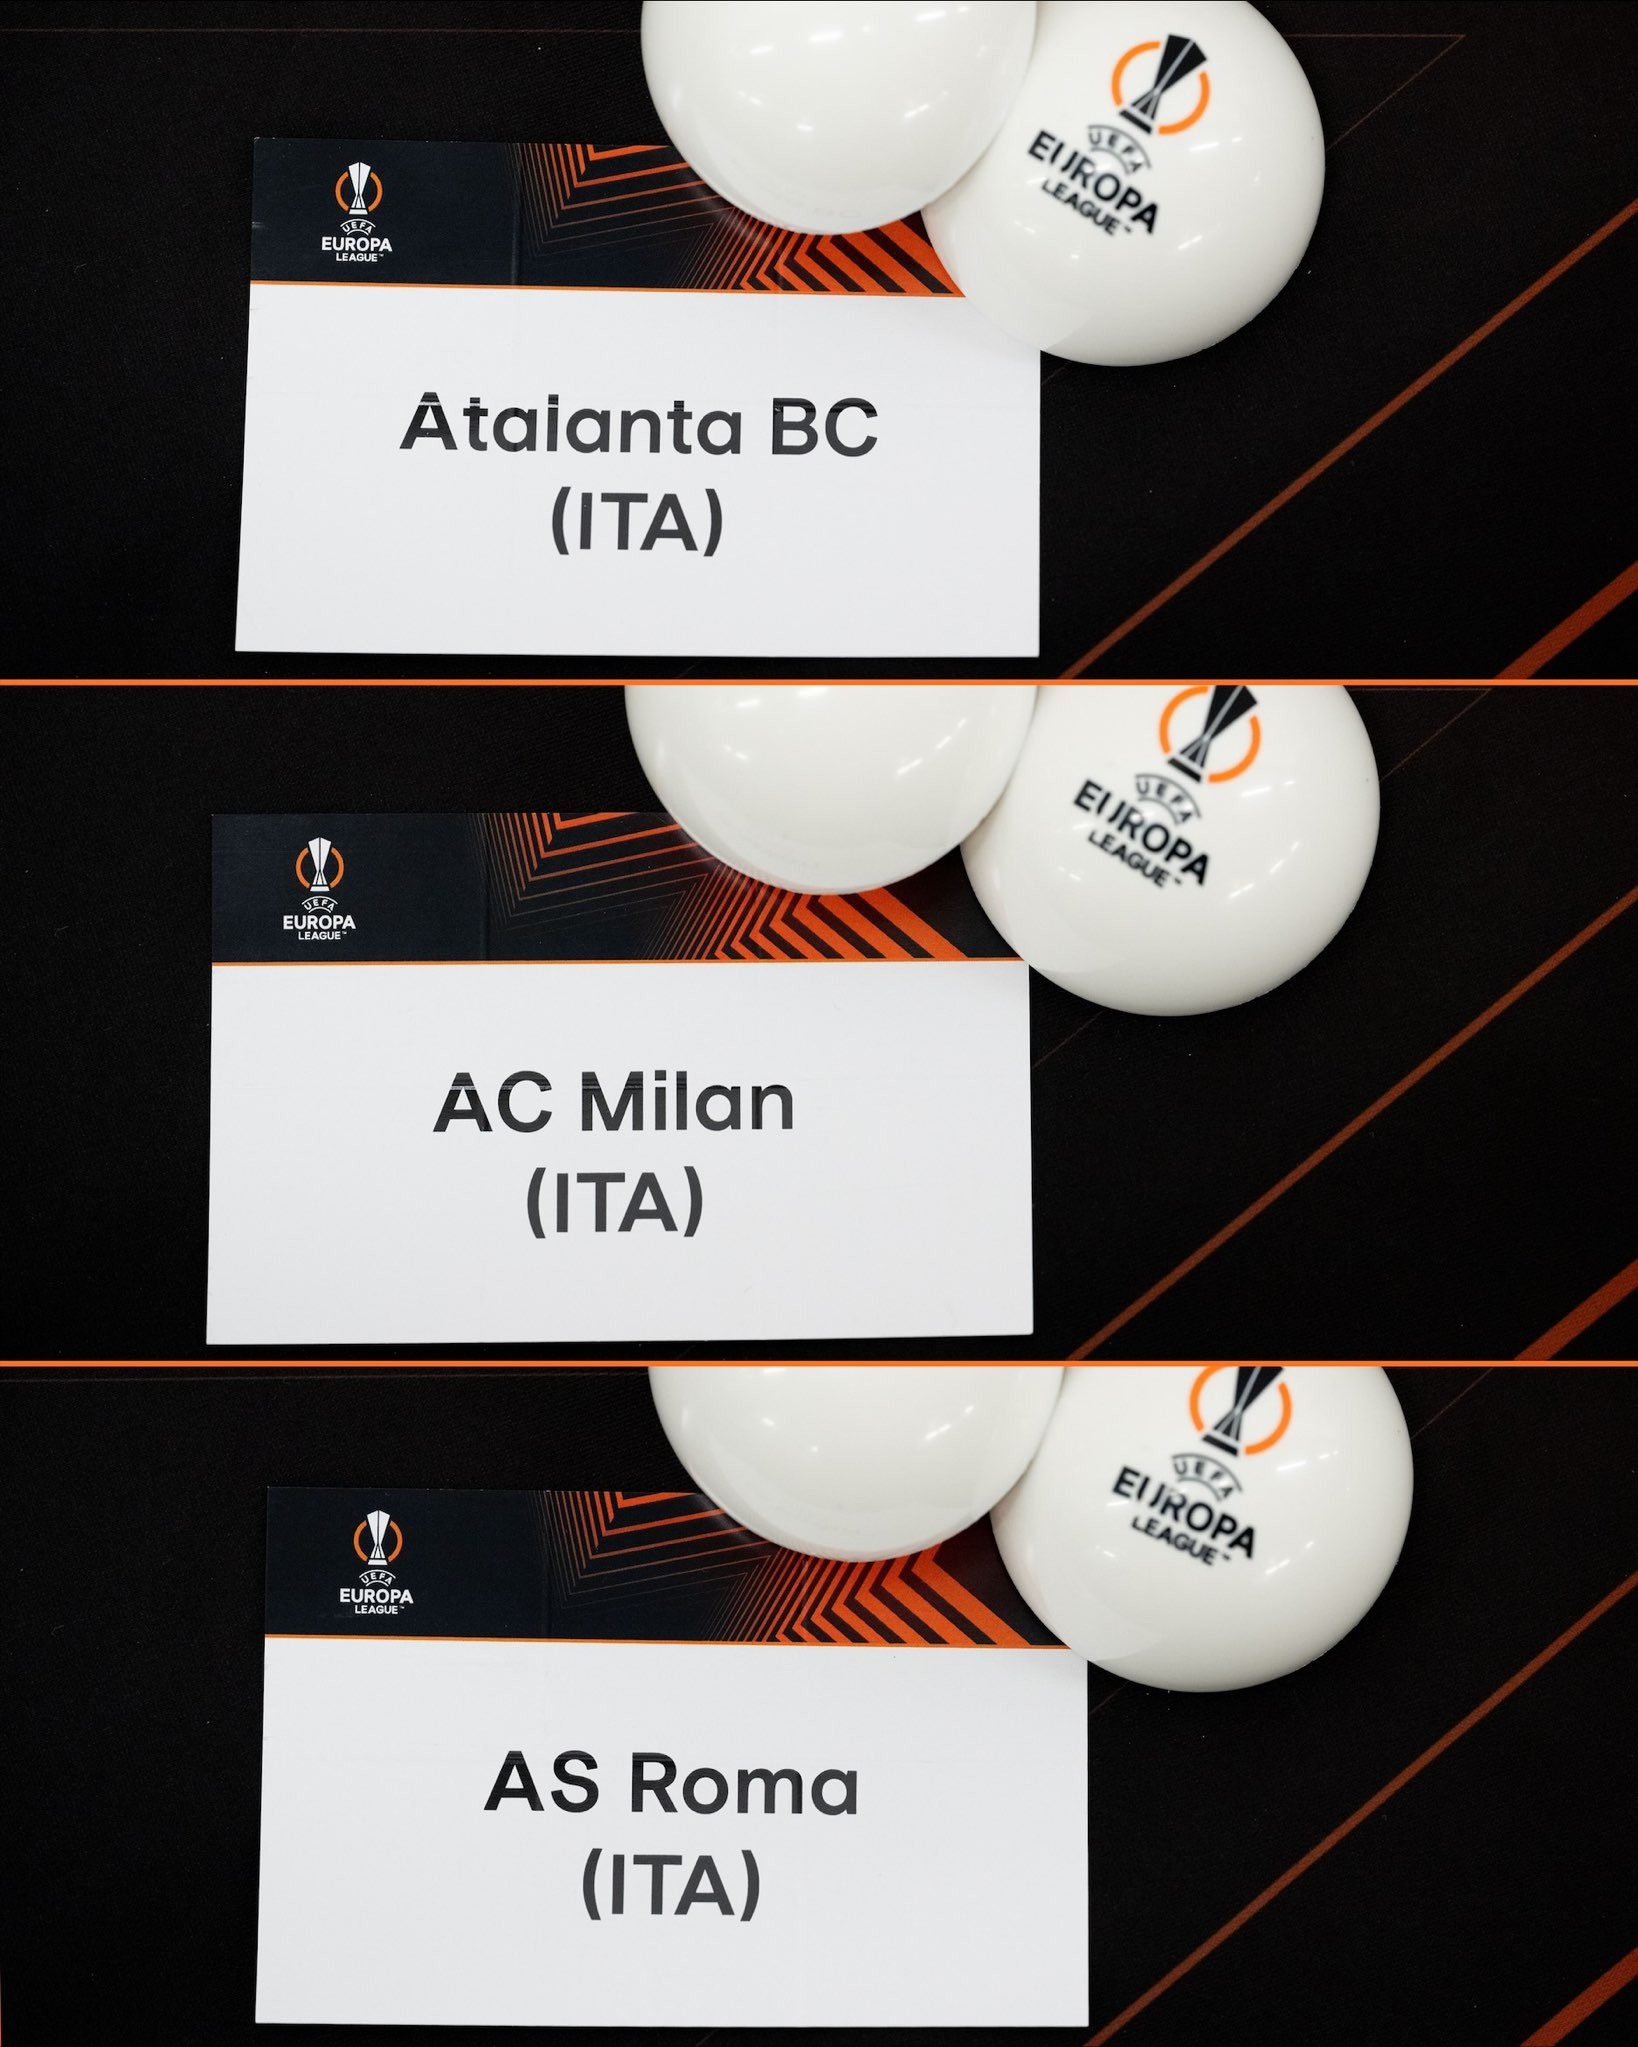 Italia góp 3 đại diện tại vòng tứ kết. Trận chung kết Europa League năm nay sẽ diễn ra vào ngày 22/5 trên sân Aviva, Dublin (CH Ireland)